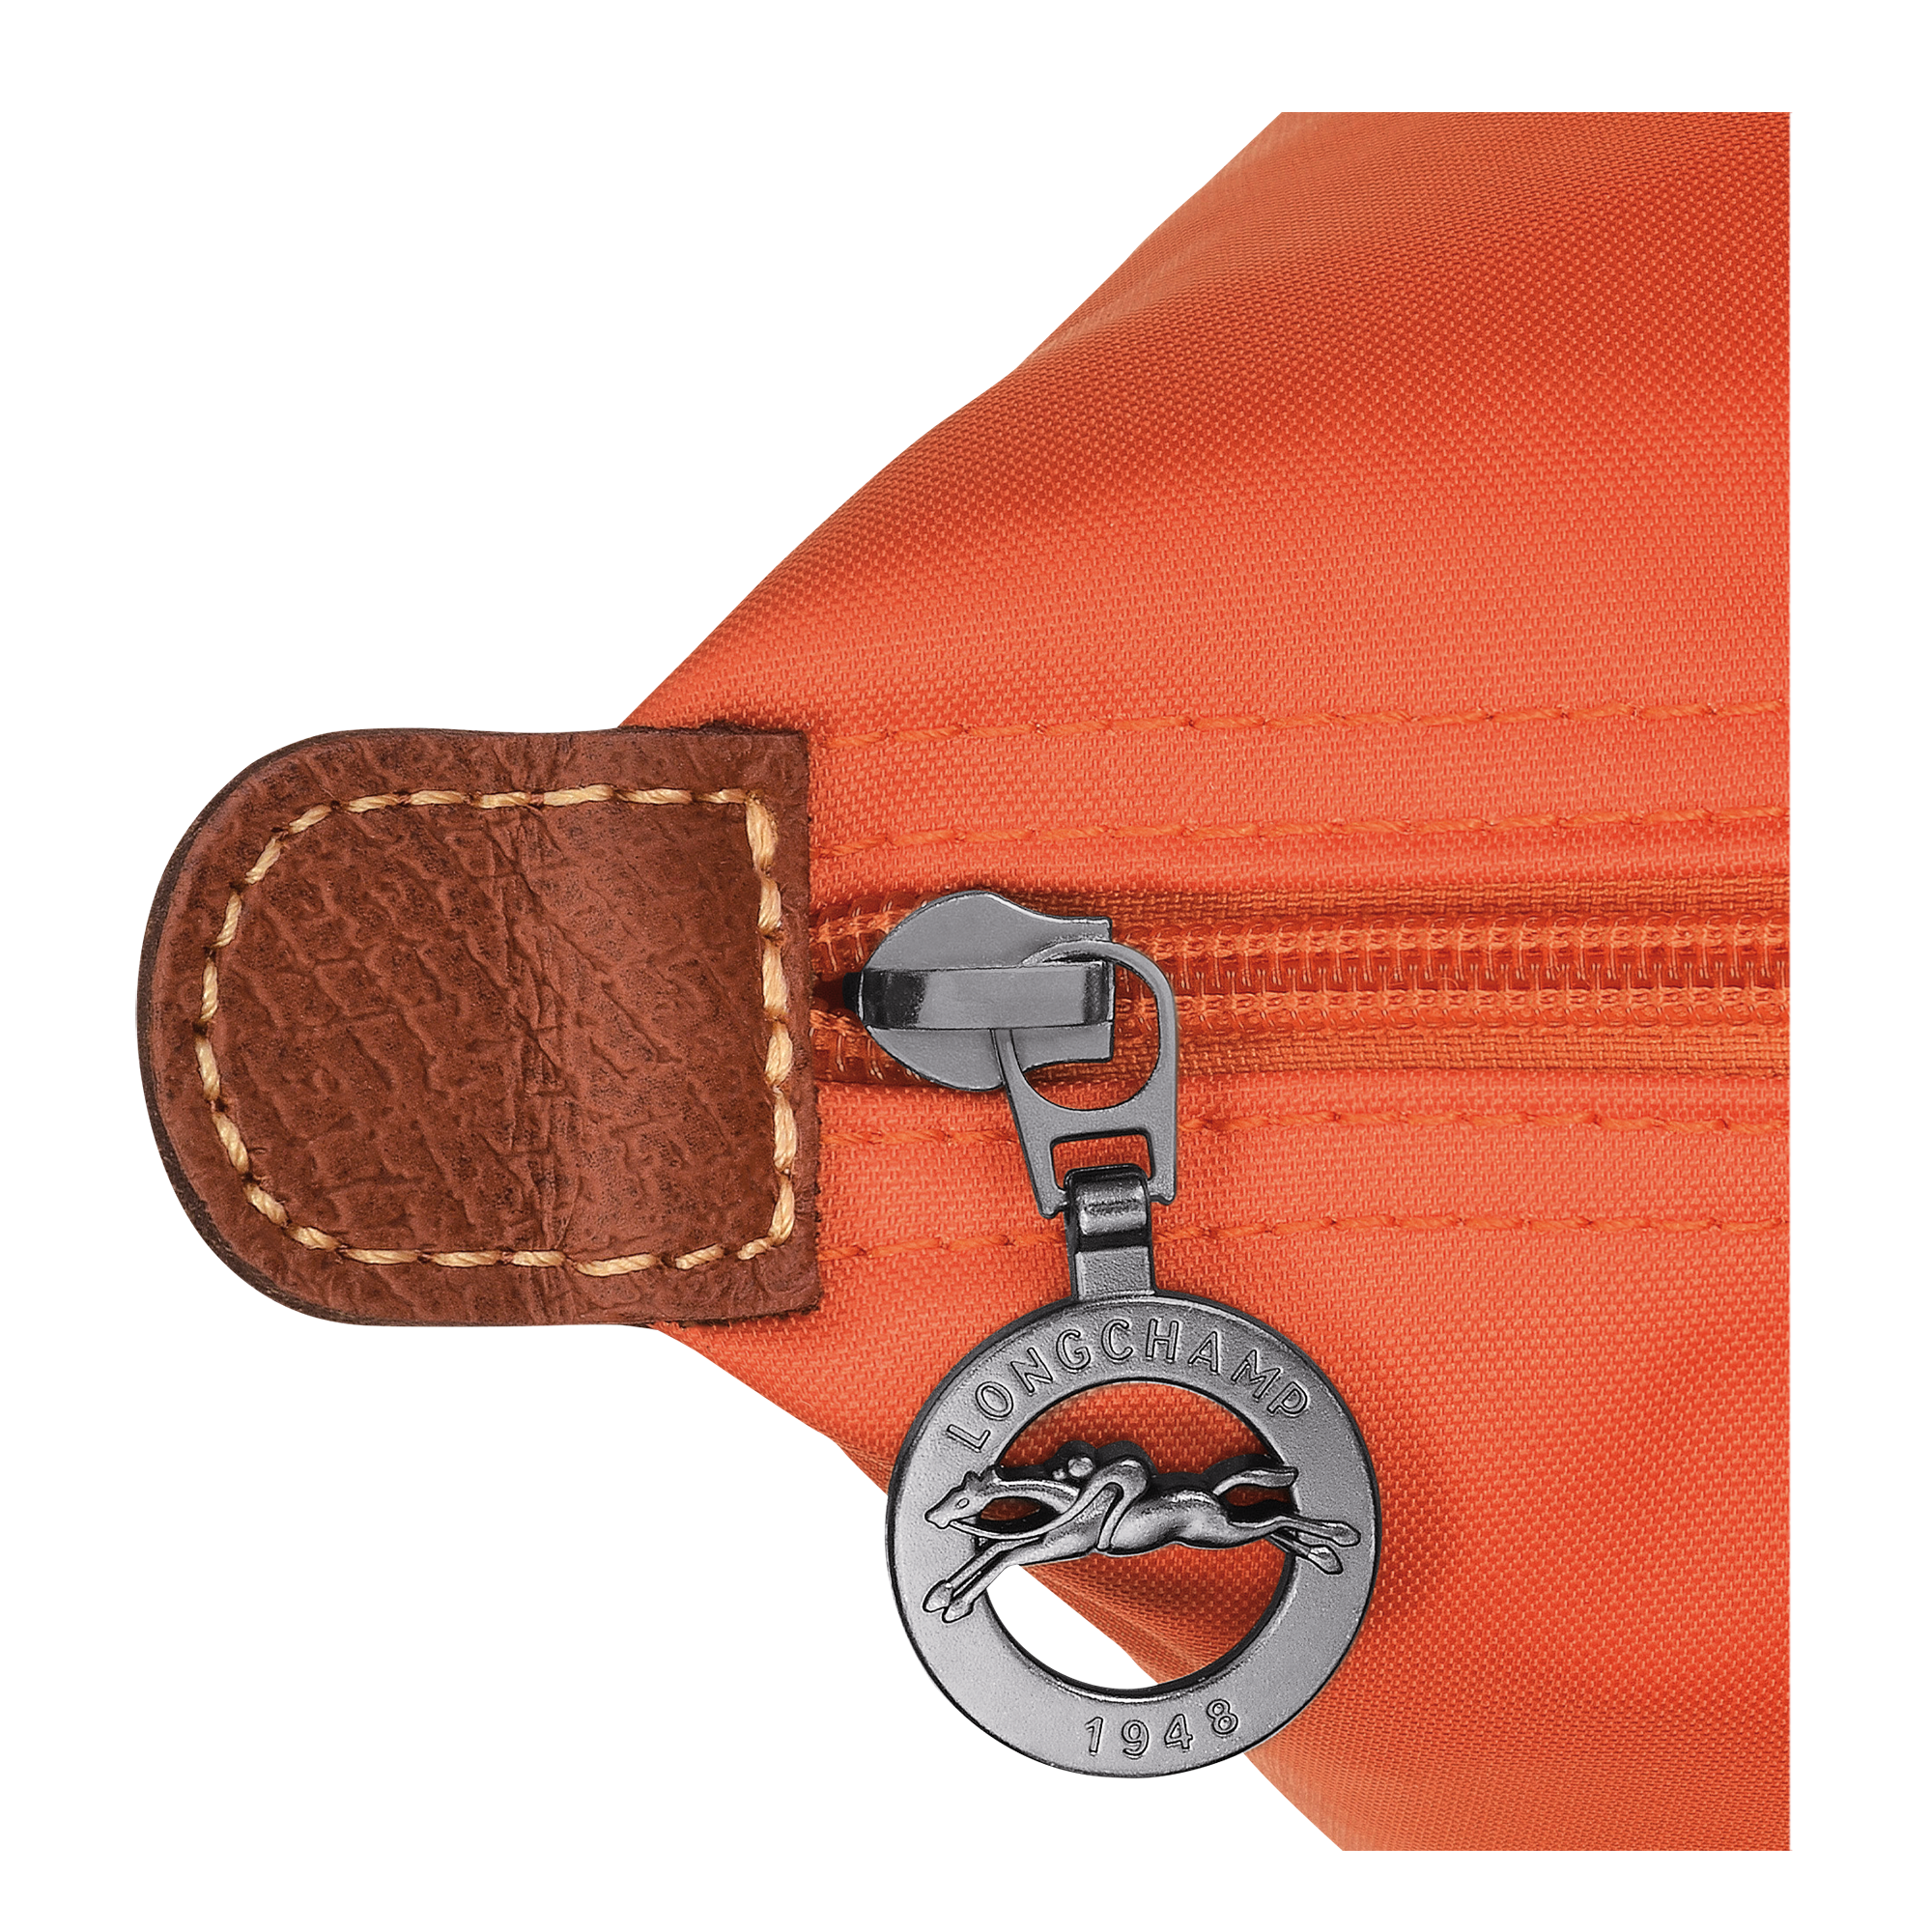 Le Pliage Original Handbag M, Orange